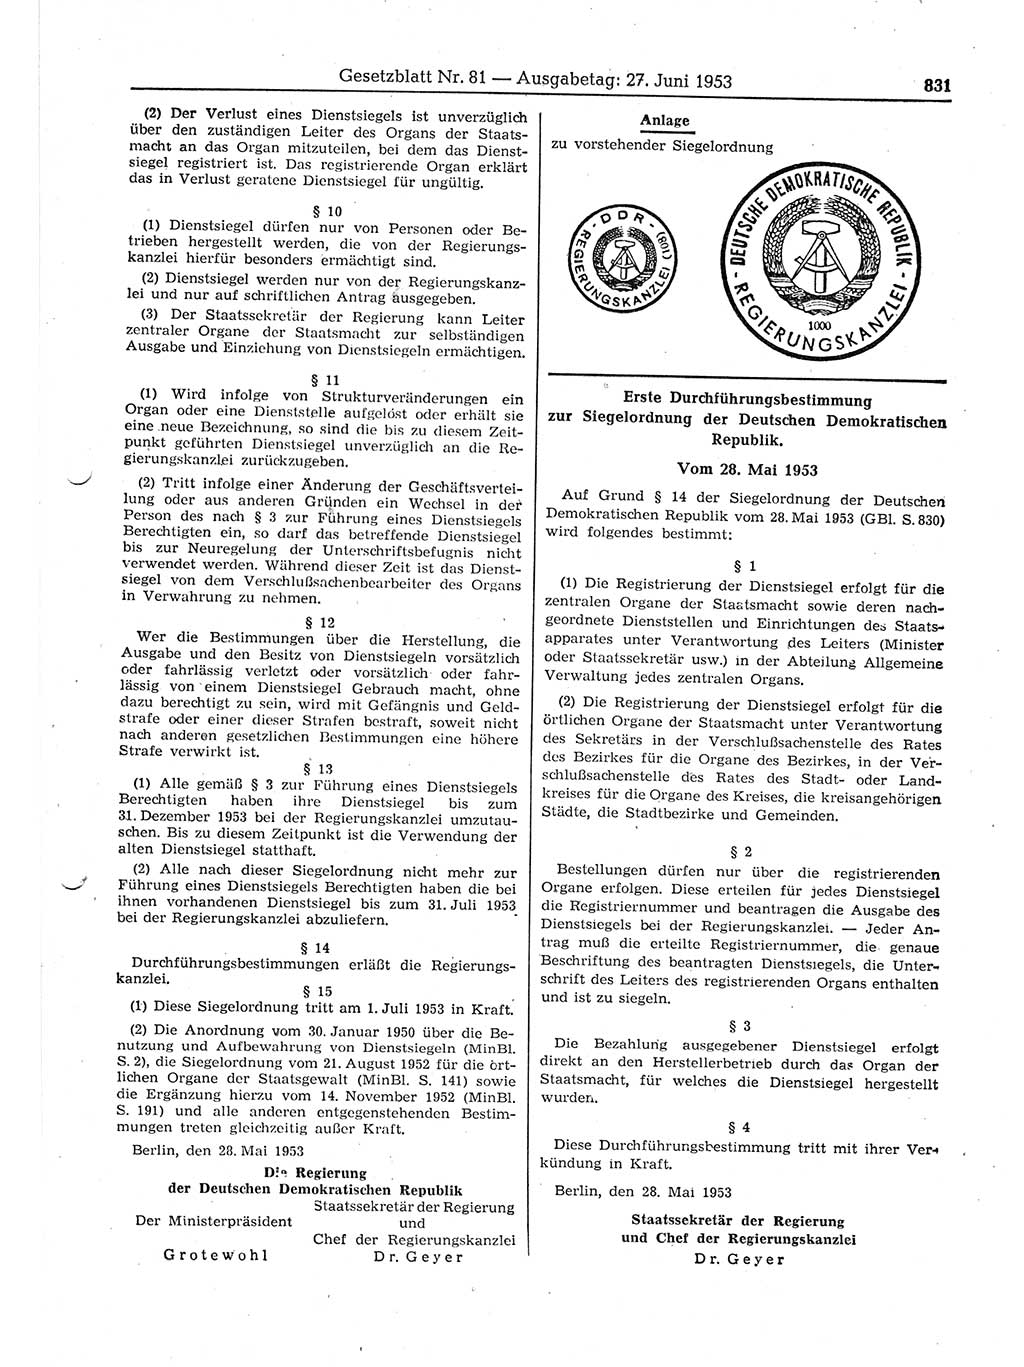 Gesetzblatt (GBl.) der Deutschen Demokratischen Republik (DDR) 1953, Seite 831 (GBl. DDR 1953, S. 831)